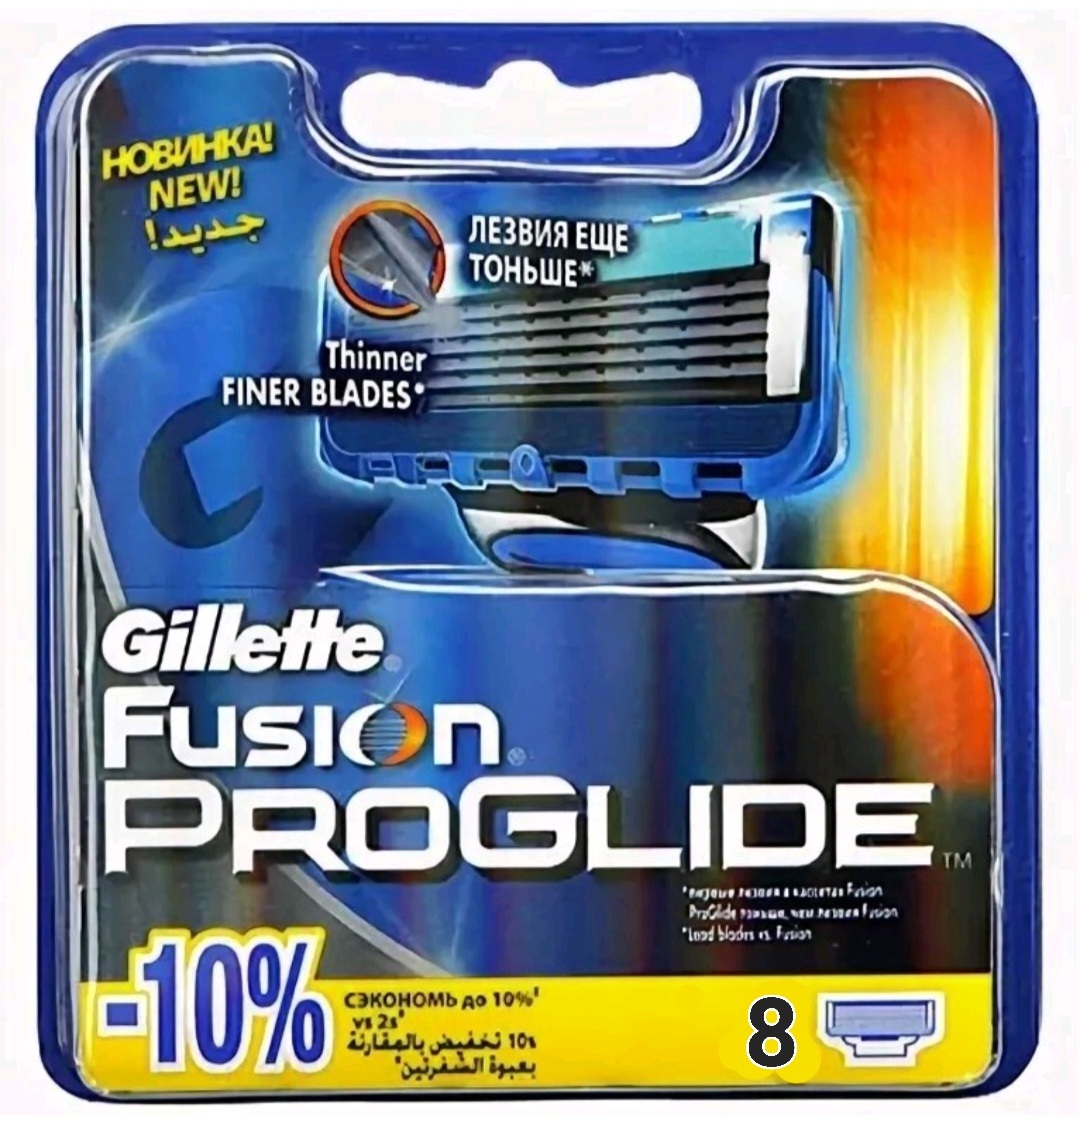 Кассеты fusion proglide купить. Fusion PROGLIDE 5 кассеты. Жиллет Фьюжн кассеты для станка 4 шт. Жиллет Фьюжн 5 Проглайд кассеты. Джилет Фьюжен 5 Проглайд лезвия.